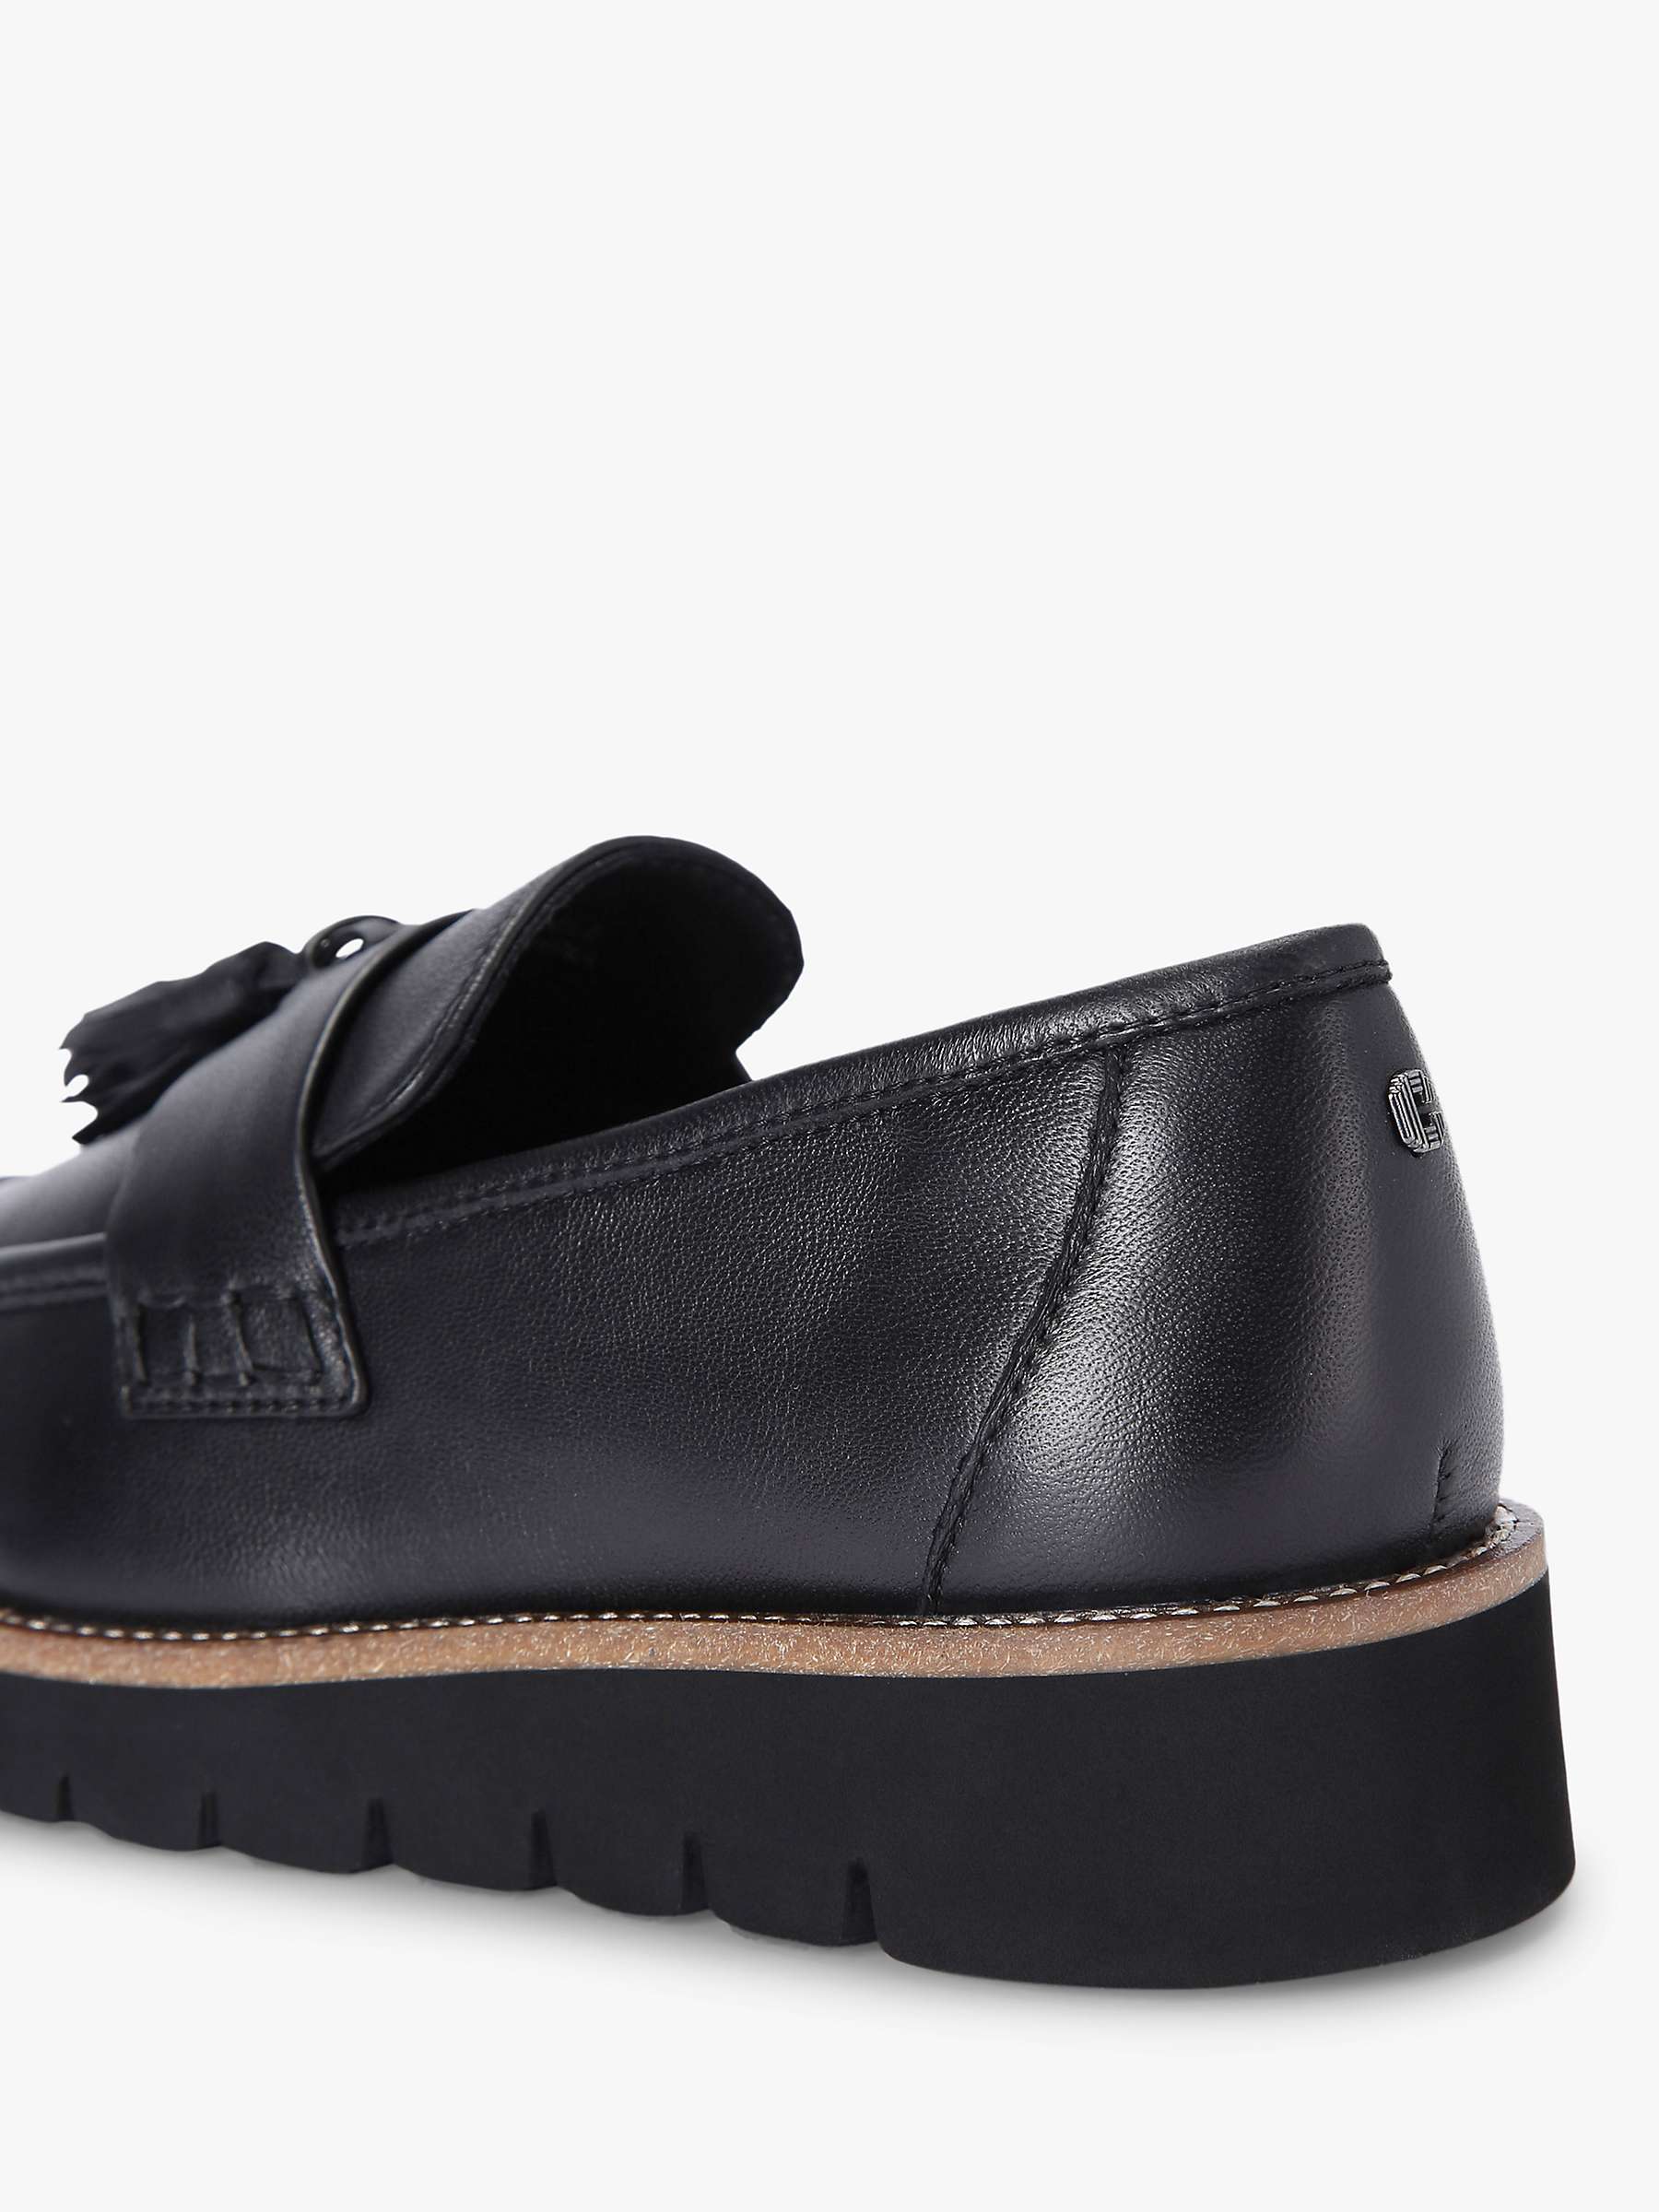 Buy Carvela Grange Leather Loafers, Black Online at johnlewis.com